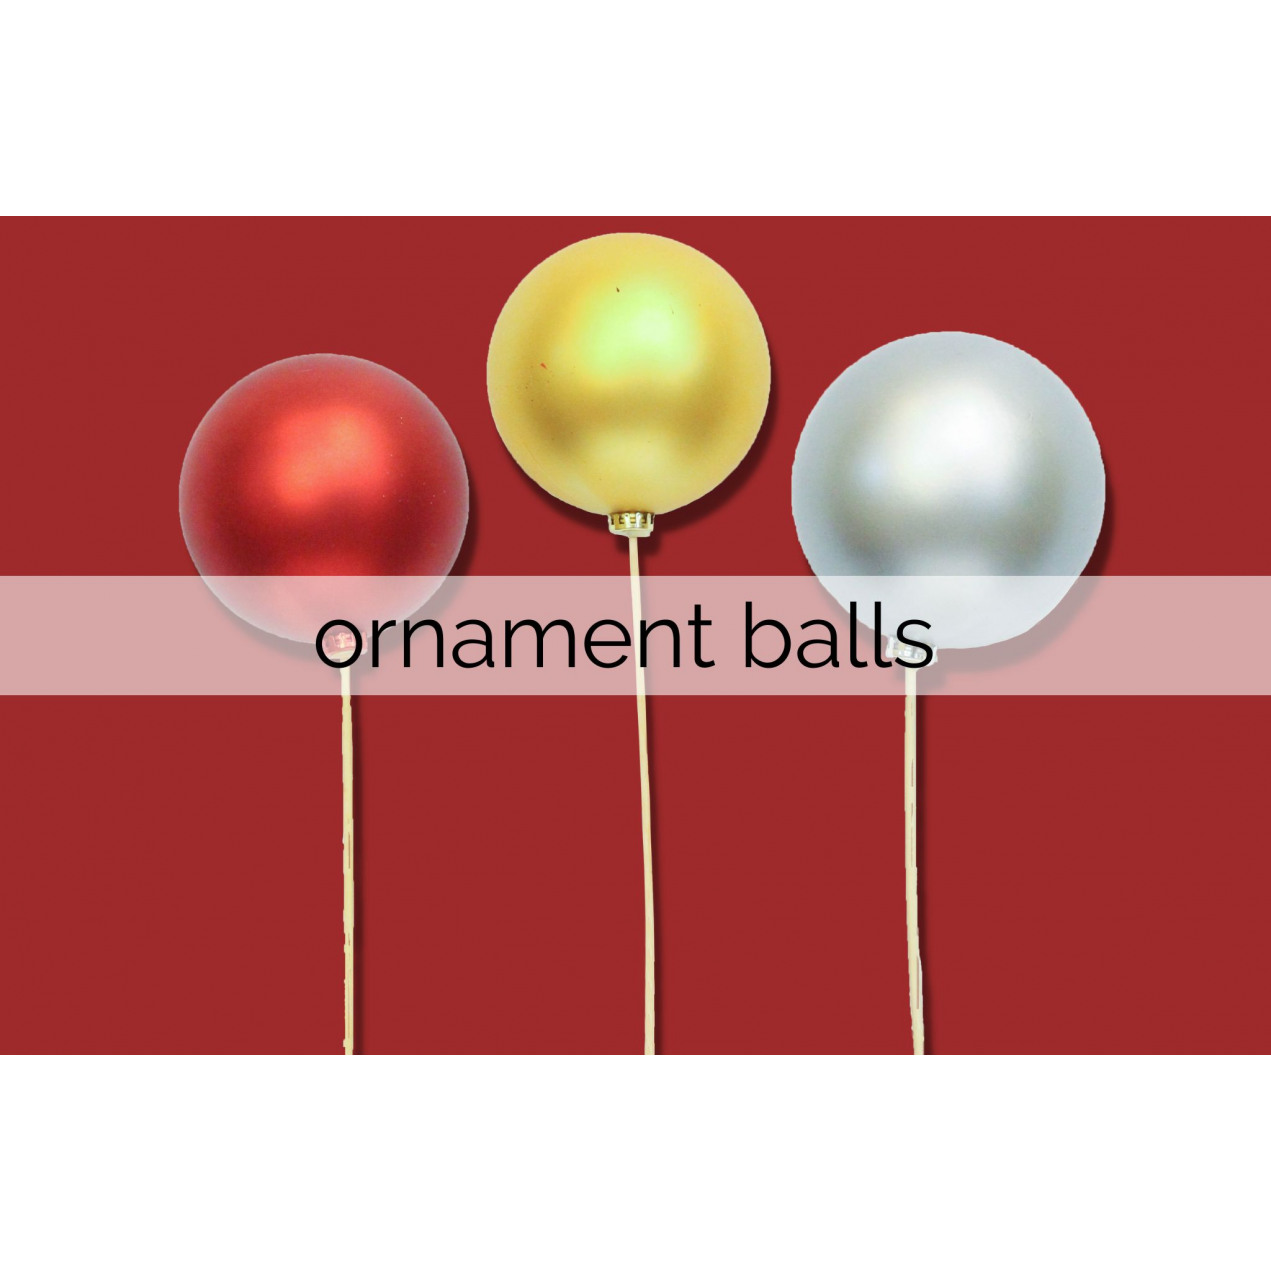 ornament balls